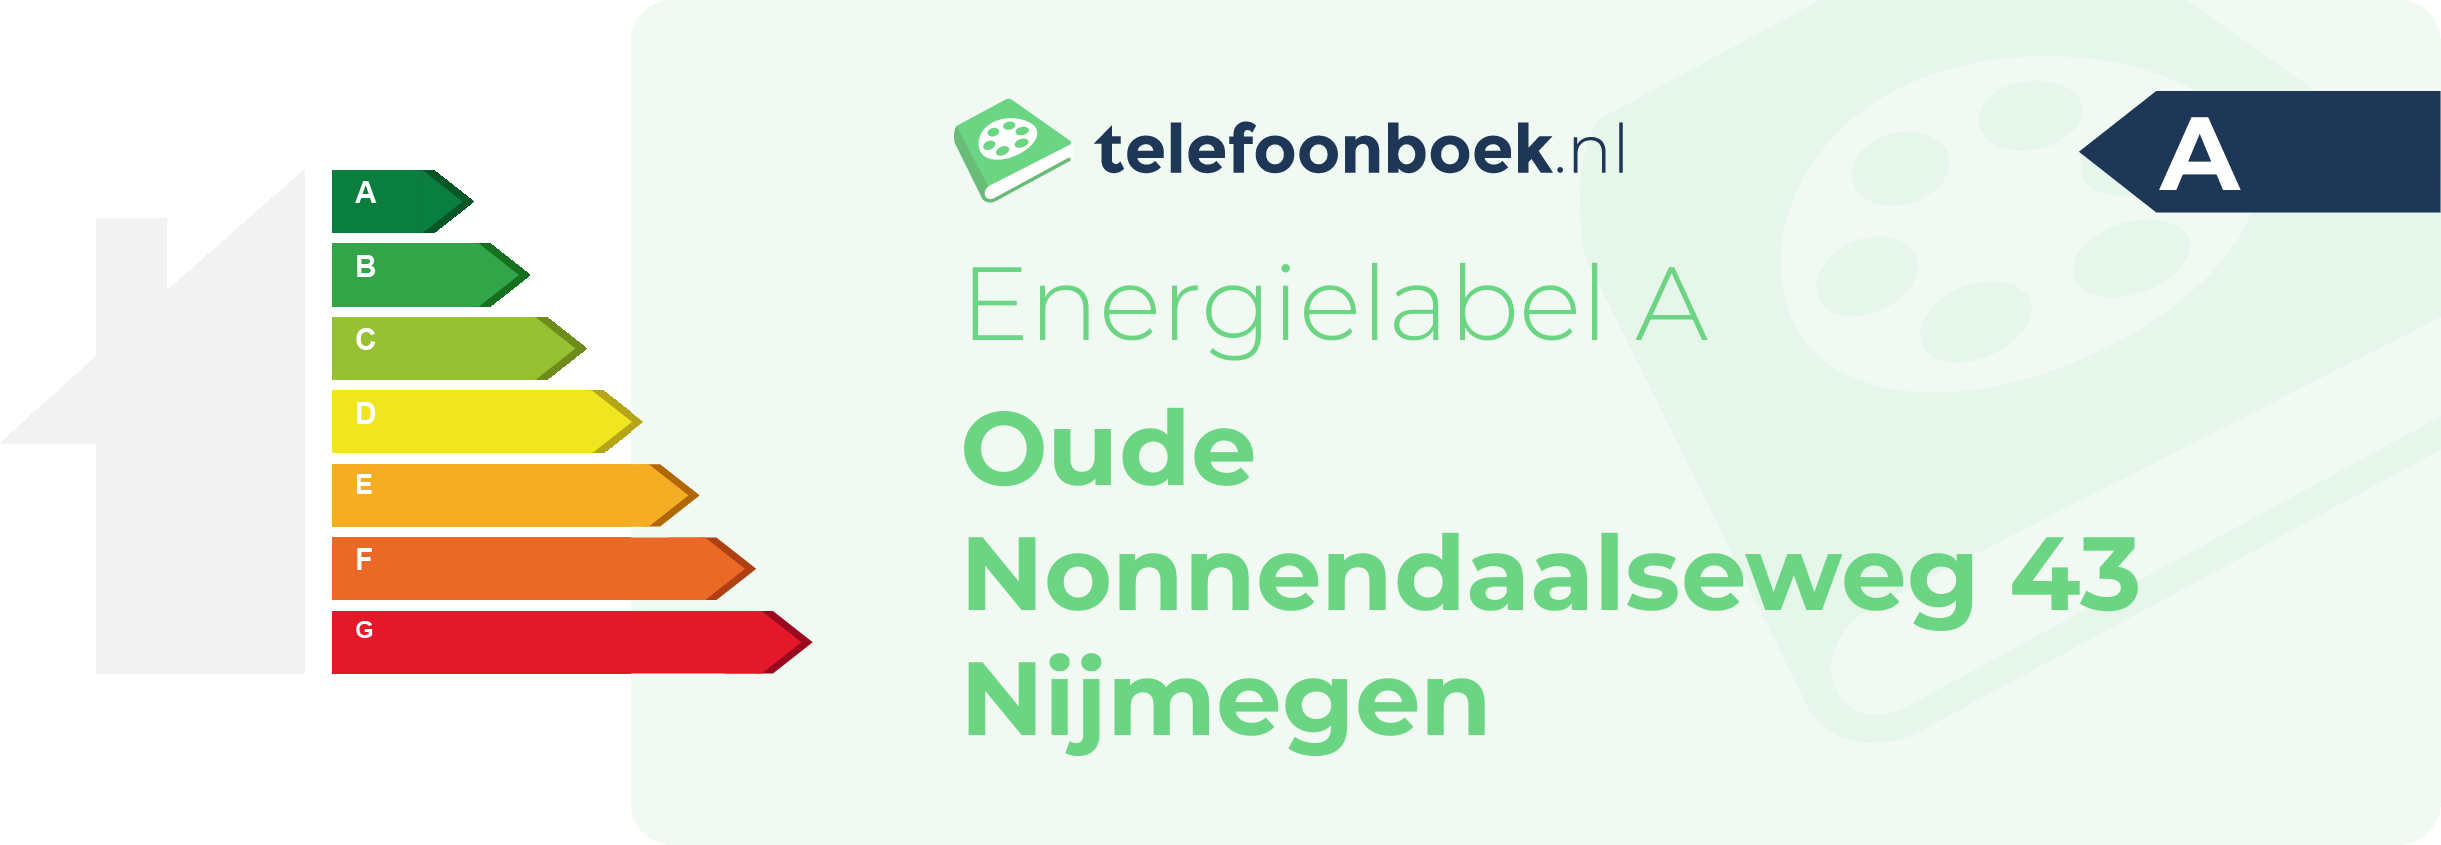 Energielabel Oude Nonnendaalseweg 43 Nijmegen